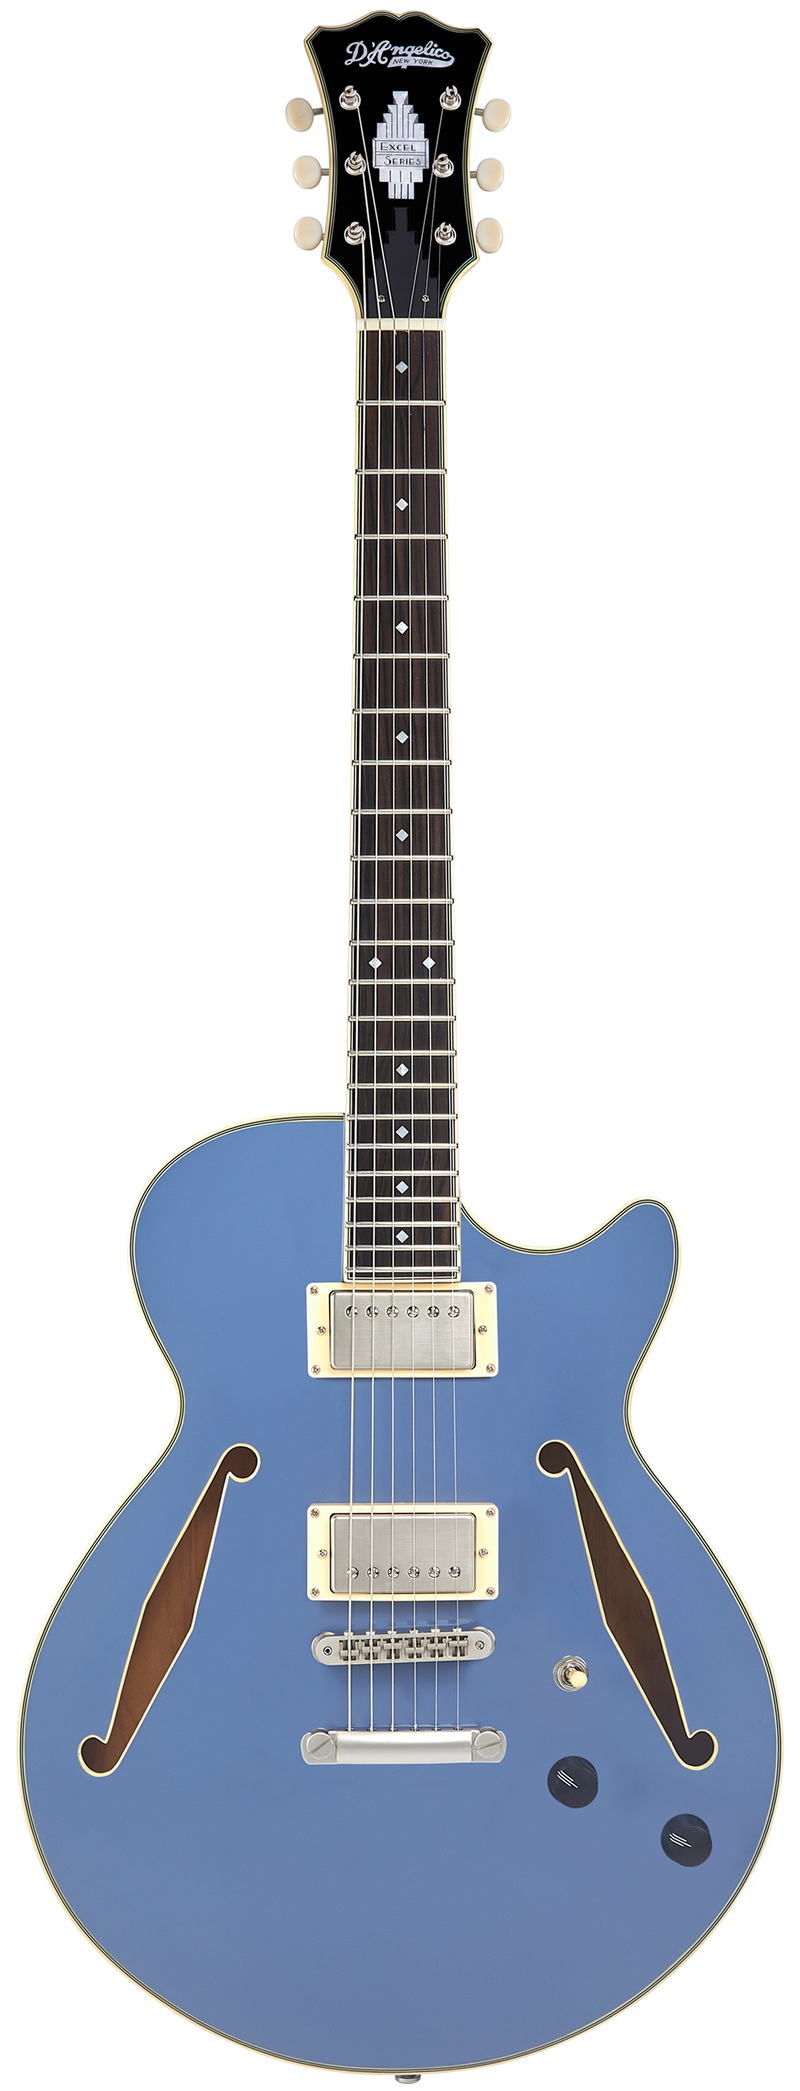 D'Angelico DAESSTSLBSNS Guitare électrique semi-creuse (bleu ardoise)